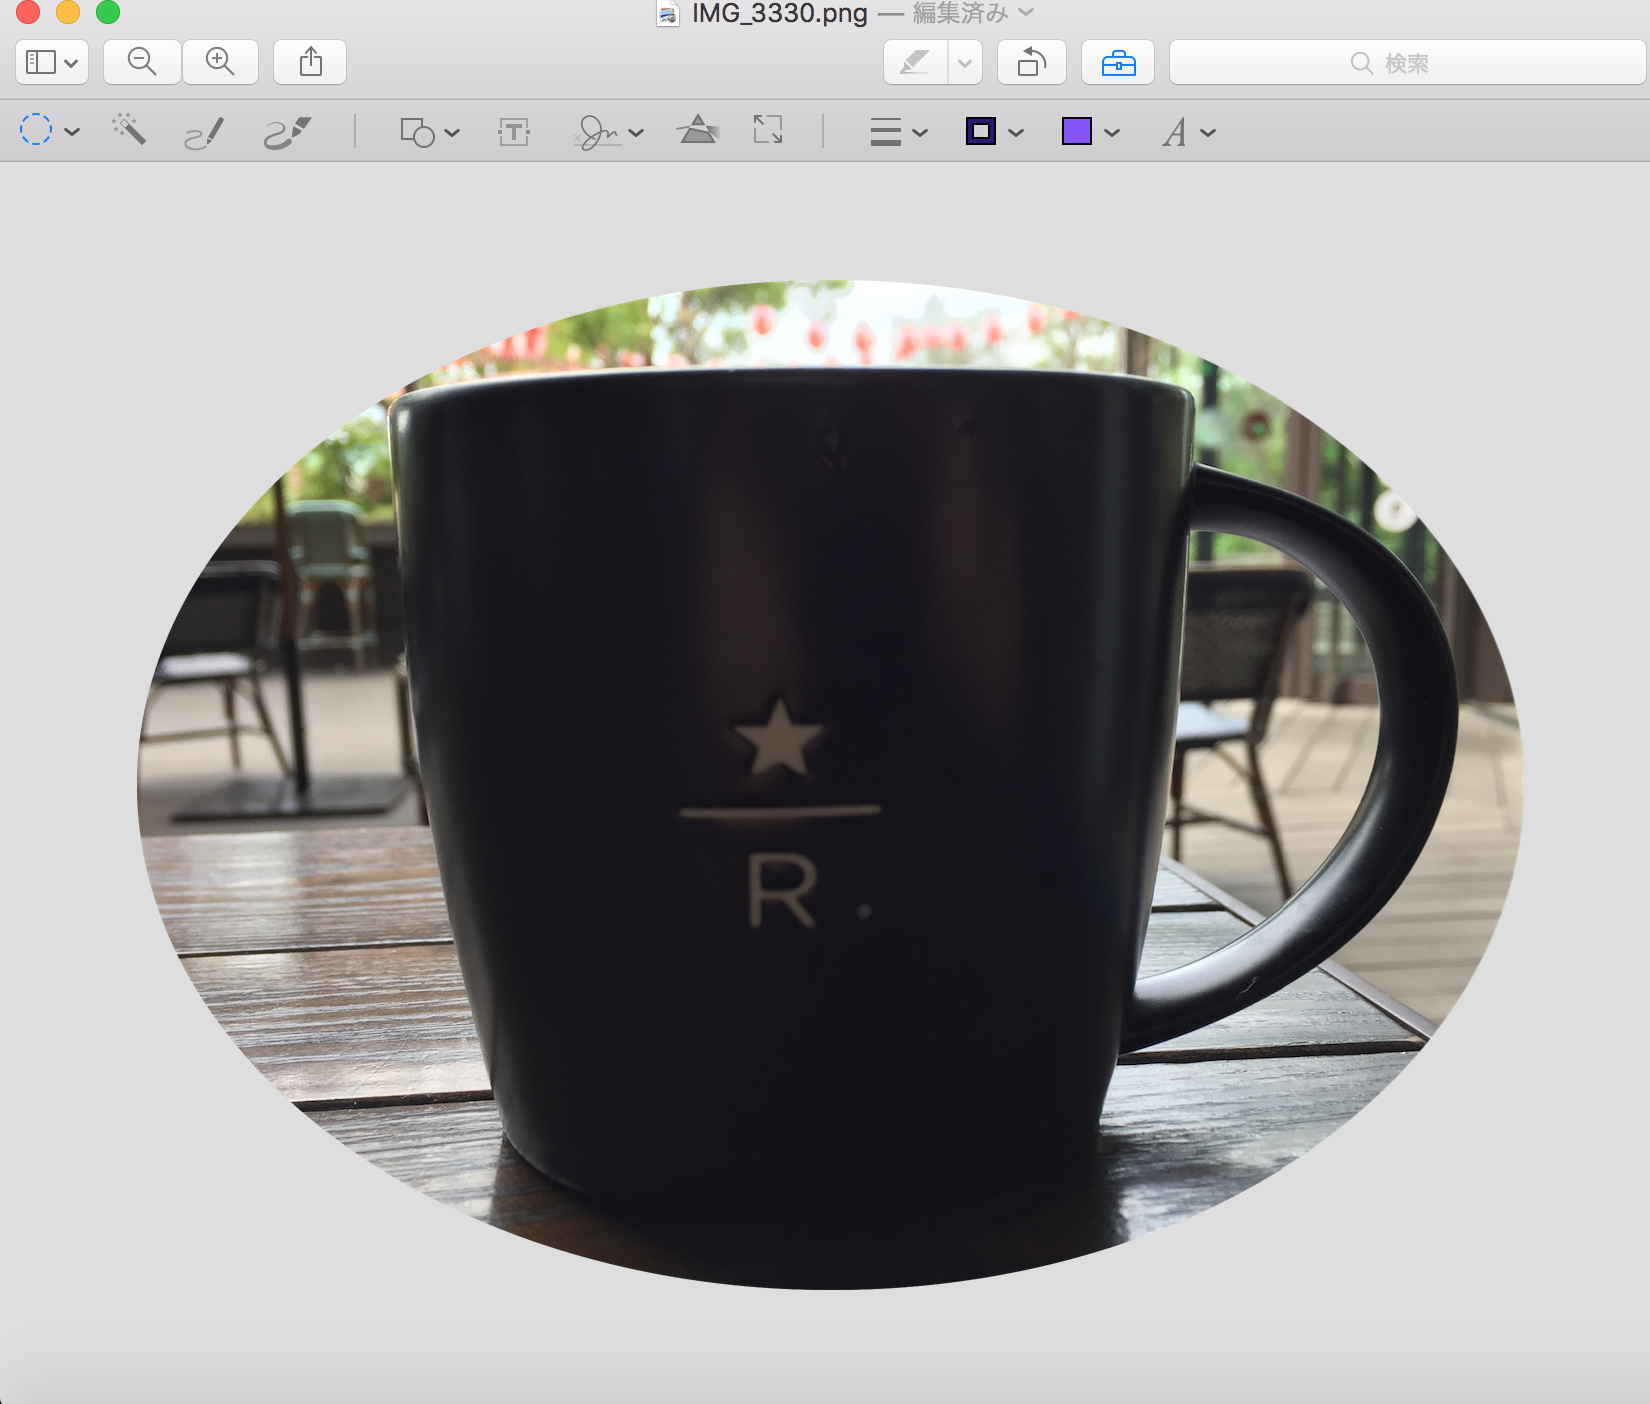 Mac OS付属アプリ「プレビュー」: ライトユーザーの画像編集はこれで十分！